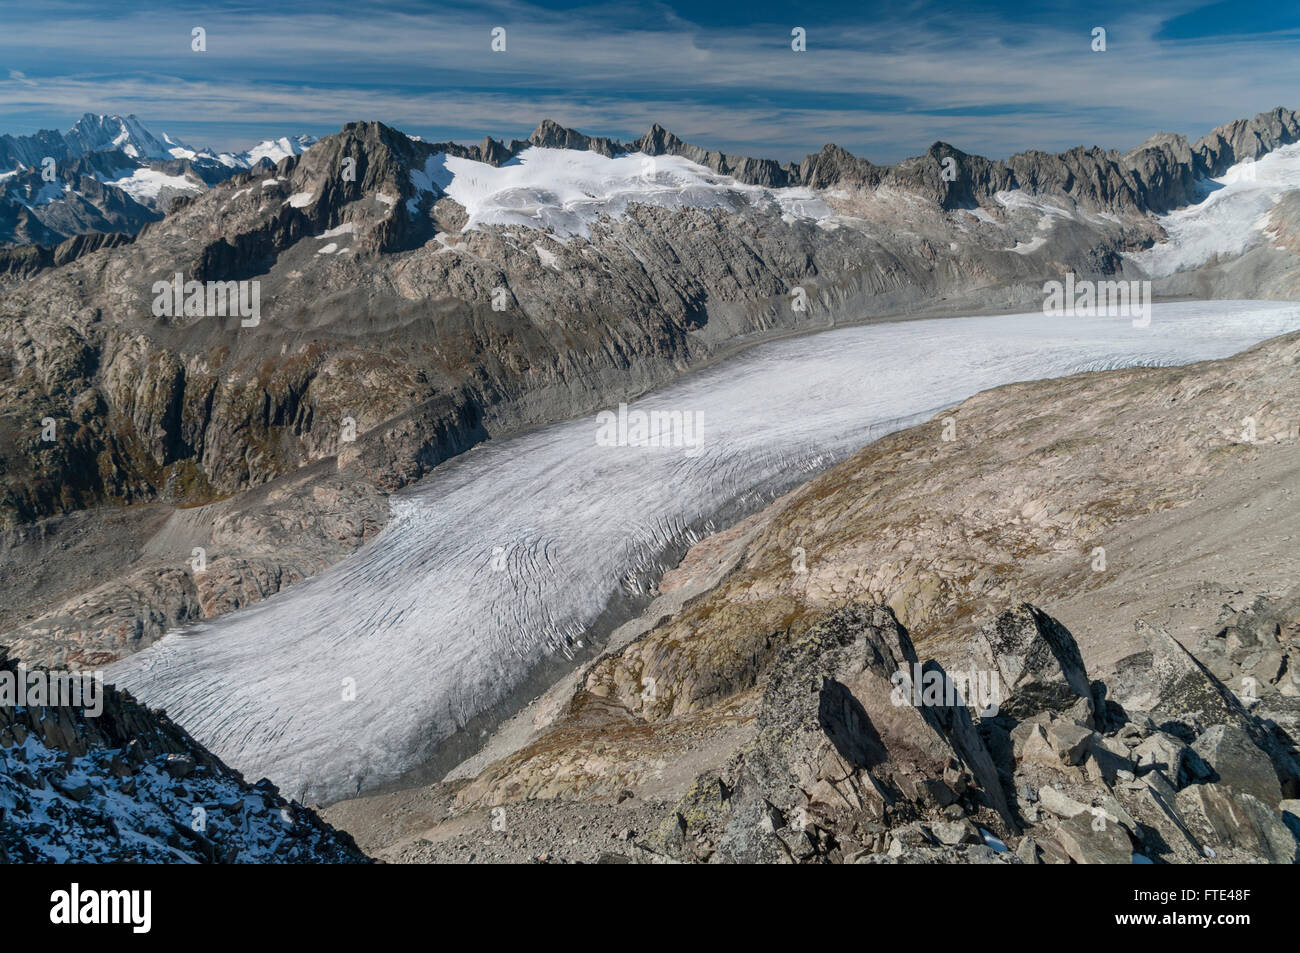 Rhonegletschers, einem großen Gletscher in den Alpen, umgeben von Bergen. Von Klein Furkahorn (3026 m) gesehen. Wallis, Schweiz. Stockfoto